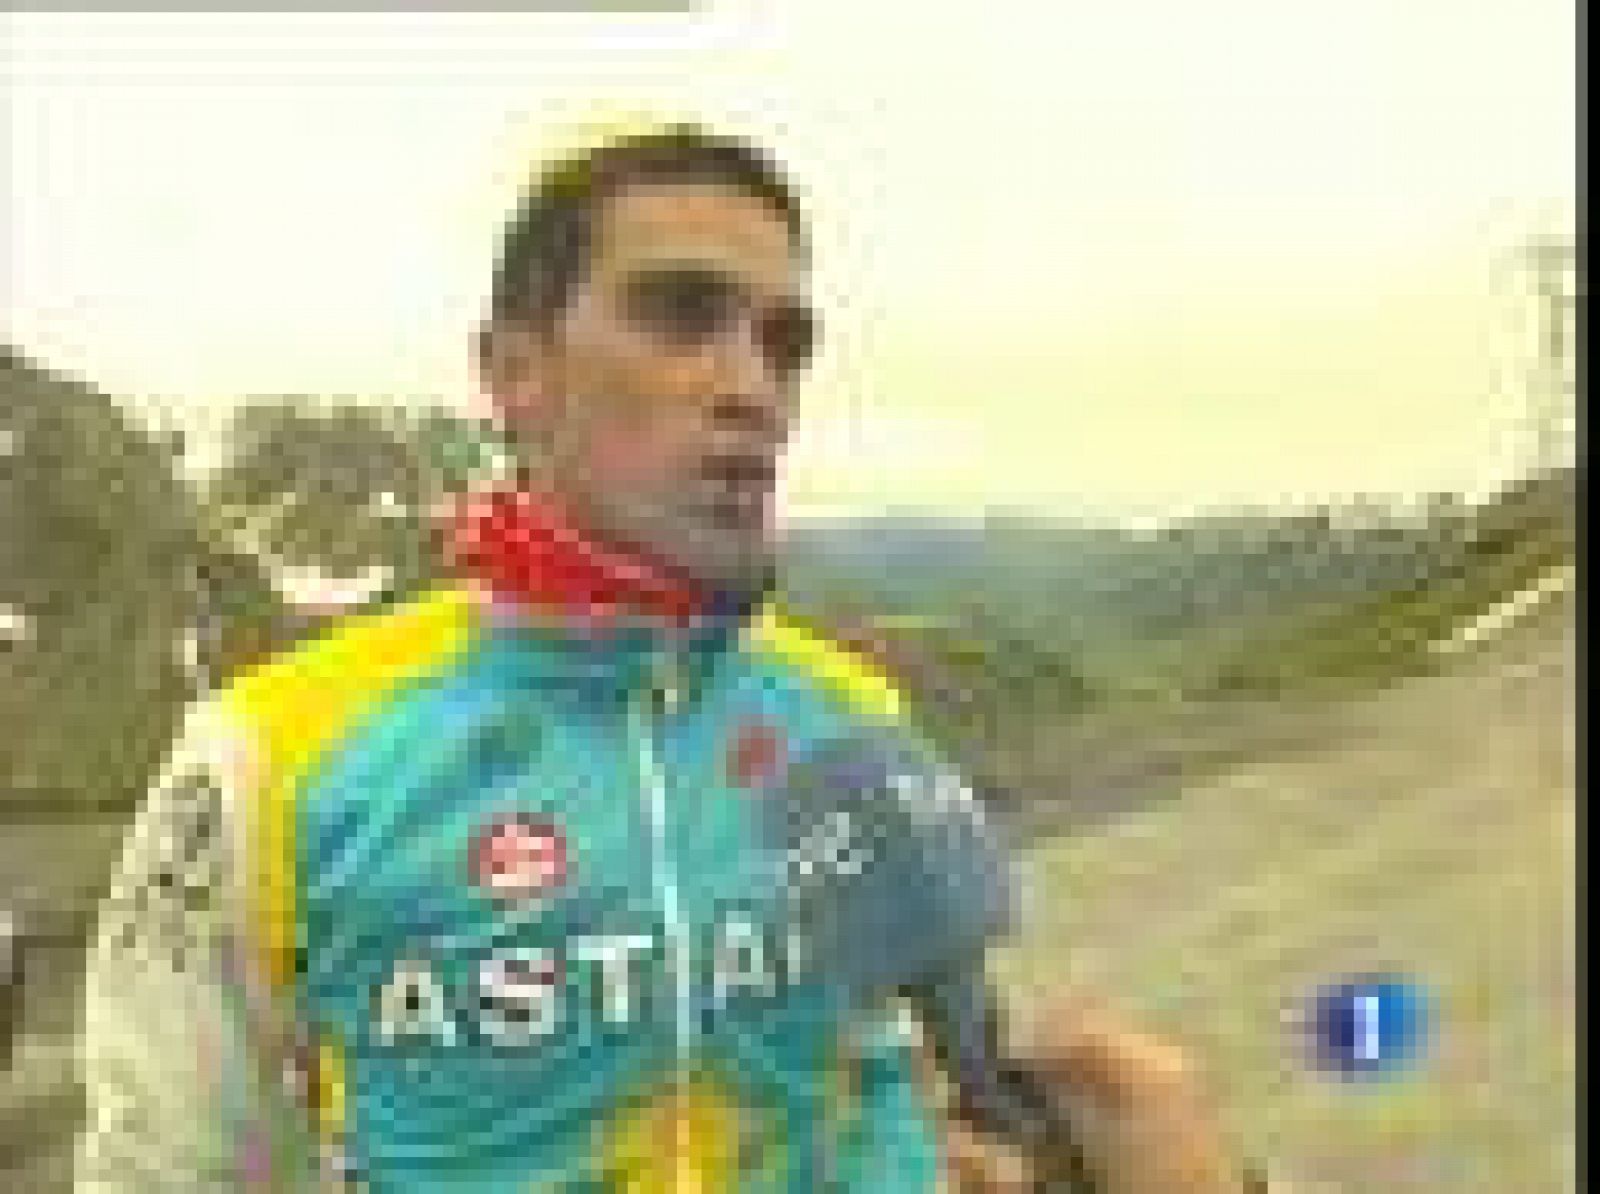 Alberto Contador, máximo favorito para hacerse con el próximo Tour de Francia, ya está entrenando la subida al mítico Tourmalet. Éste año, la ronda gala tendrá dos jorndas en los Pirineos para celebrar el paso centenario del Tour por la forntera entre Francia y España.